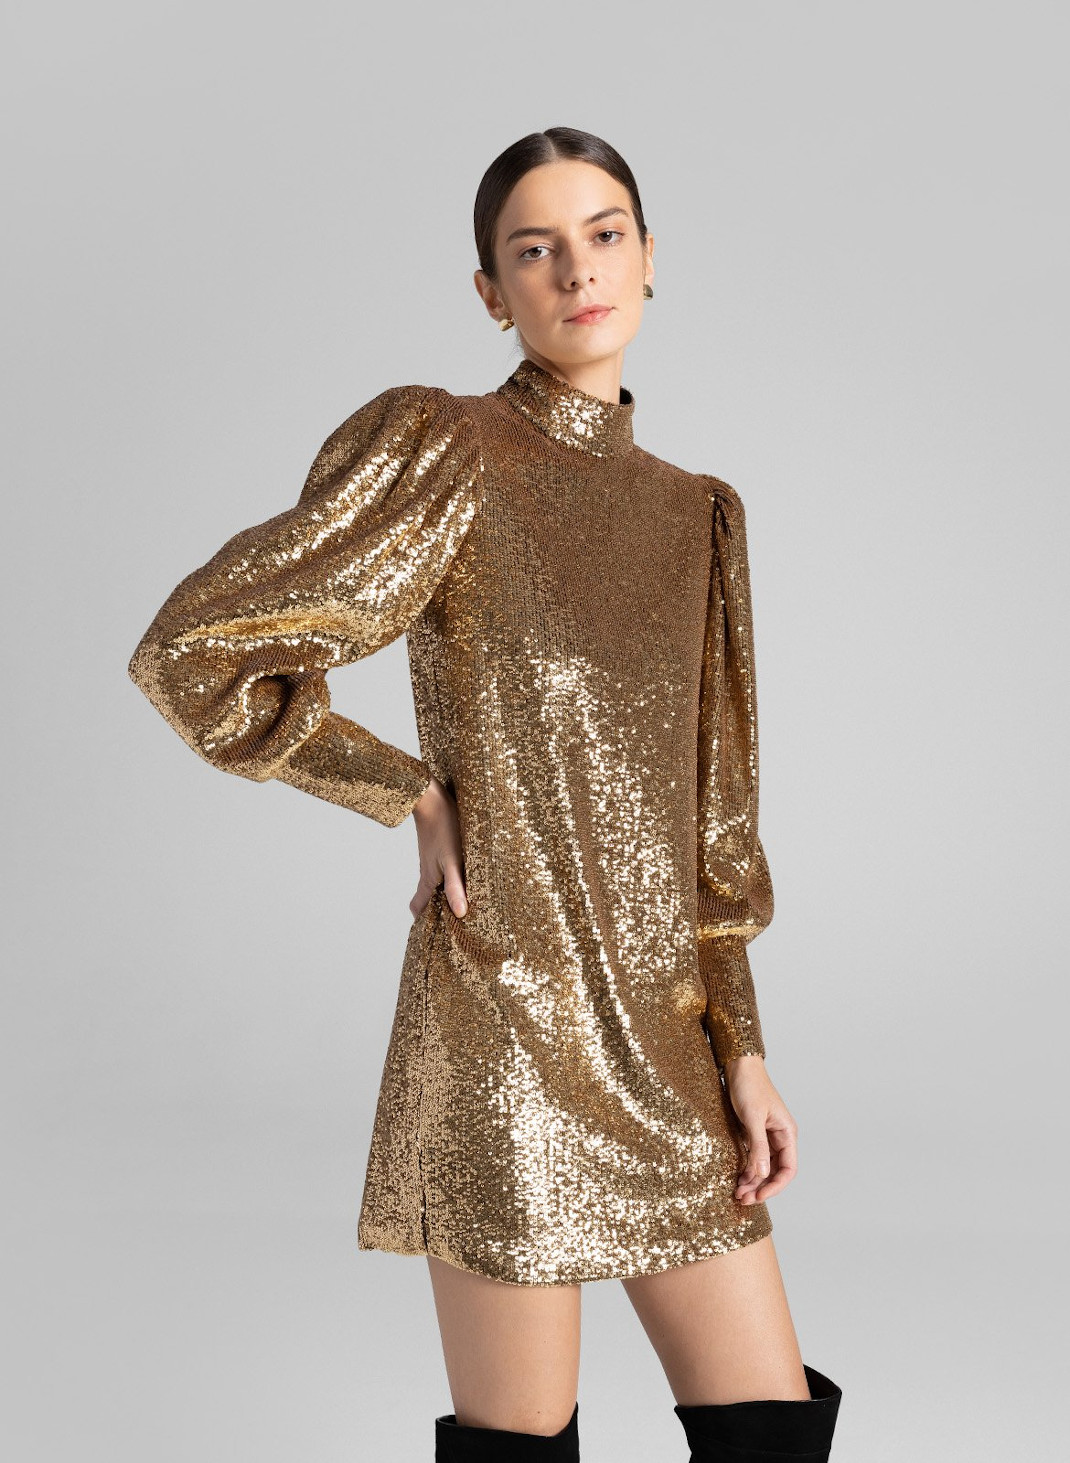 Το χρυσό φόρεμα της εταιρίας ALC